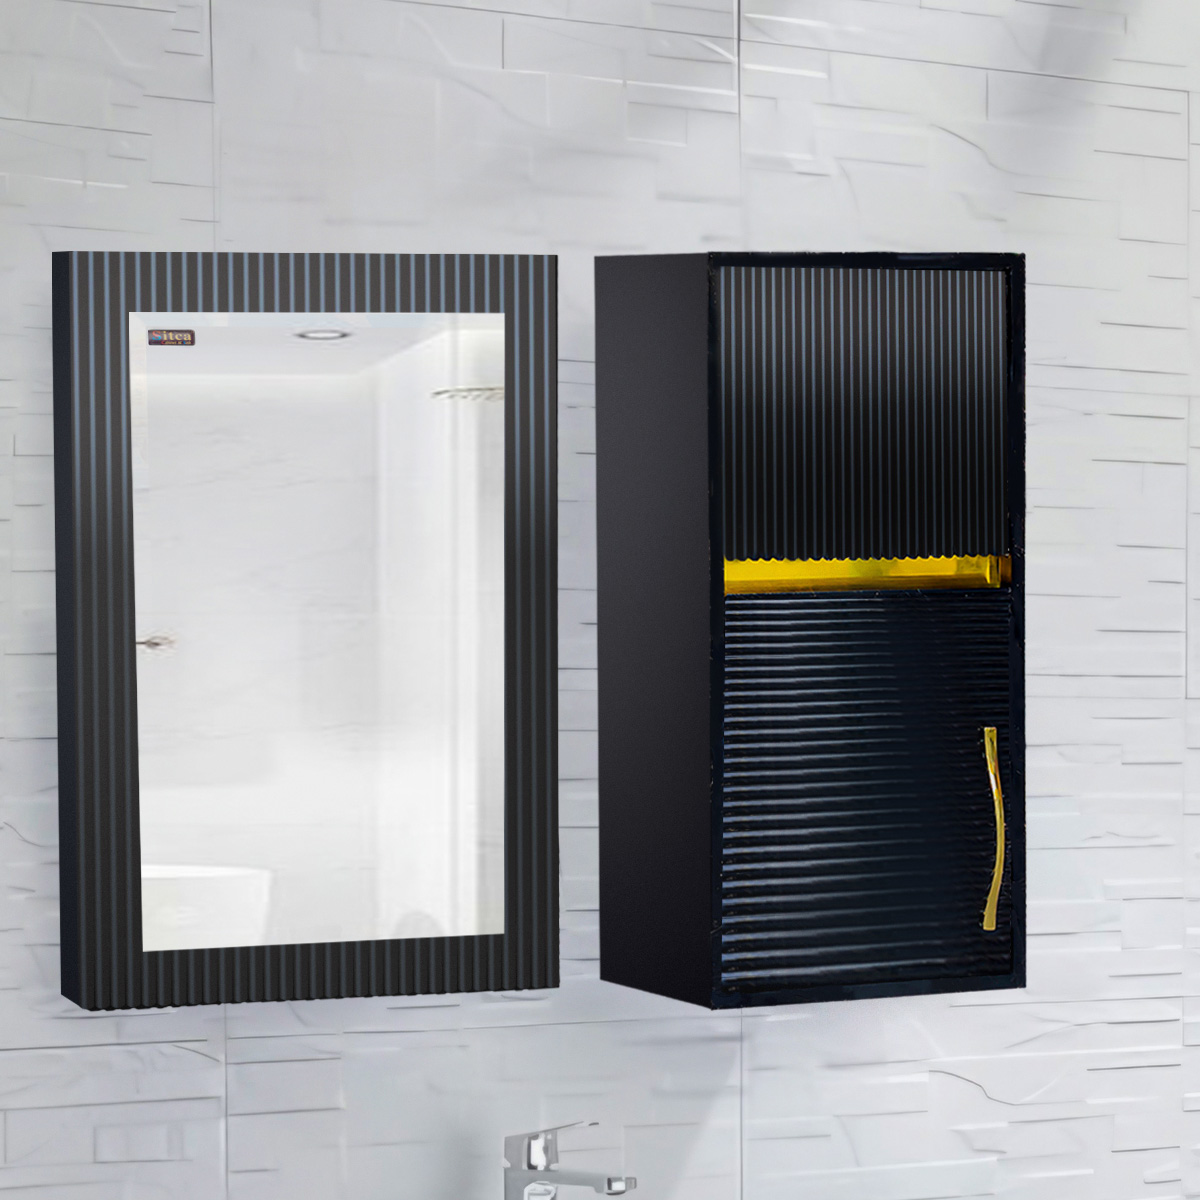 آینه سرویس بهداشتی سیتکا مدل GI006 به همراه باکس